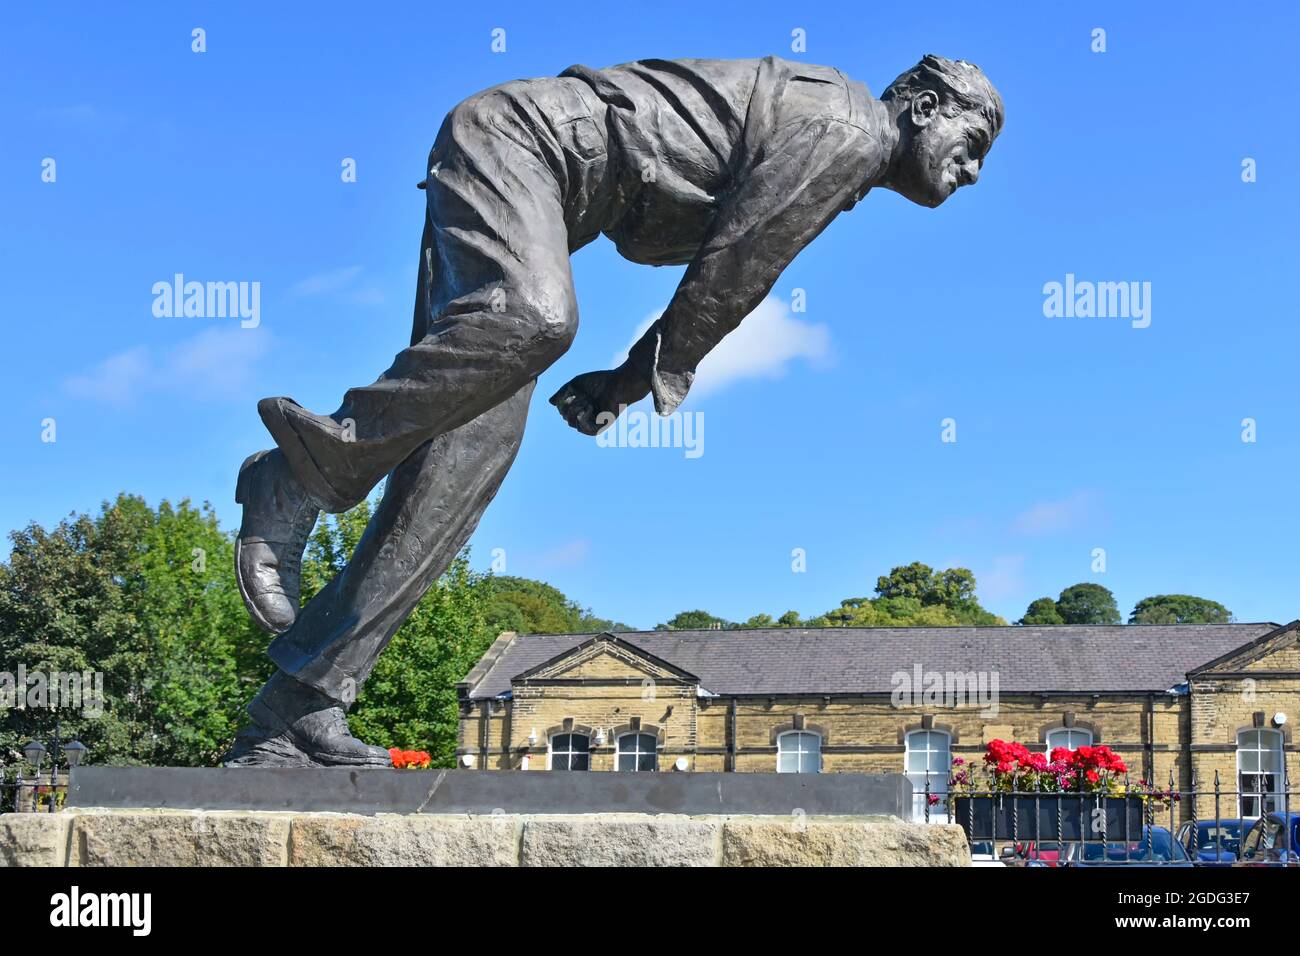 Statue de Fred Freddie Trueman OBE célèbre joueur de cricket sportif pour le Yorkshire County club & England fast Bowler Skipton North Yorkshire Angleterre Royaume-Uni Banque D'Images